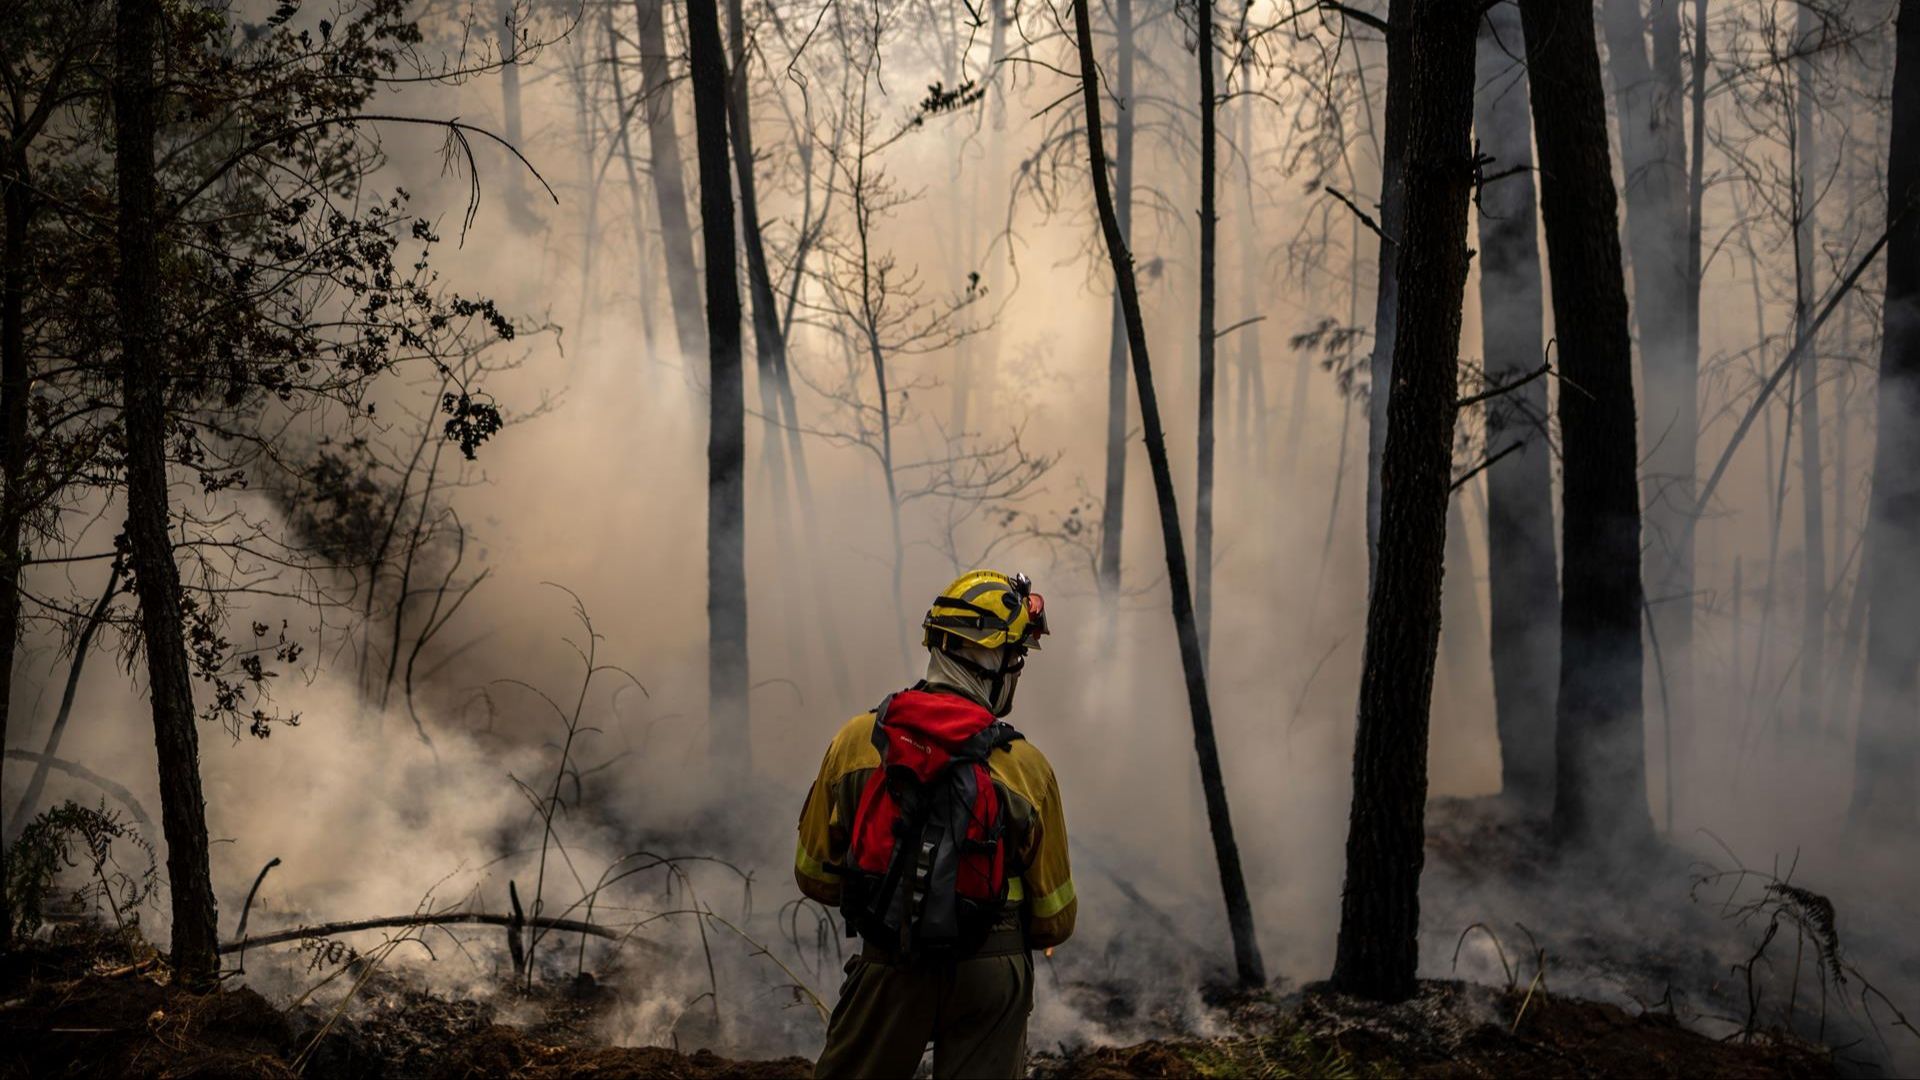 Las lluvias aplacan al fuego en Galicia, devastada por los incendios en verano: han ardido 40.000 hectáreas